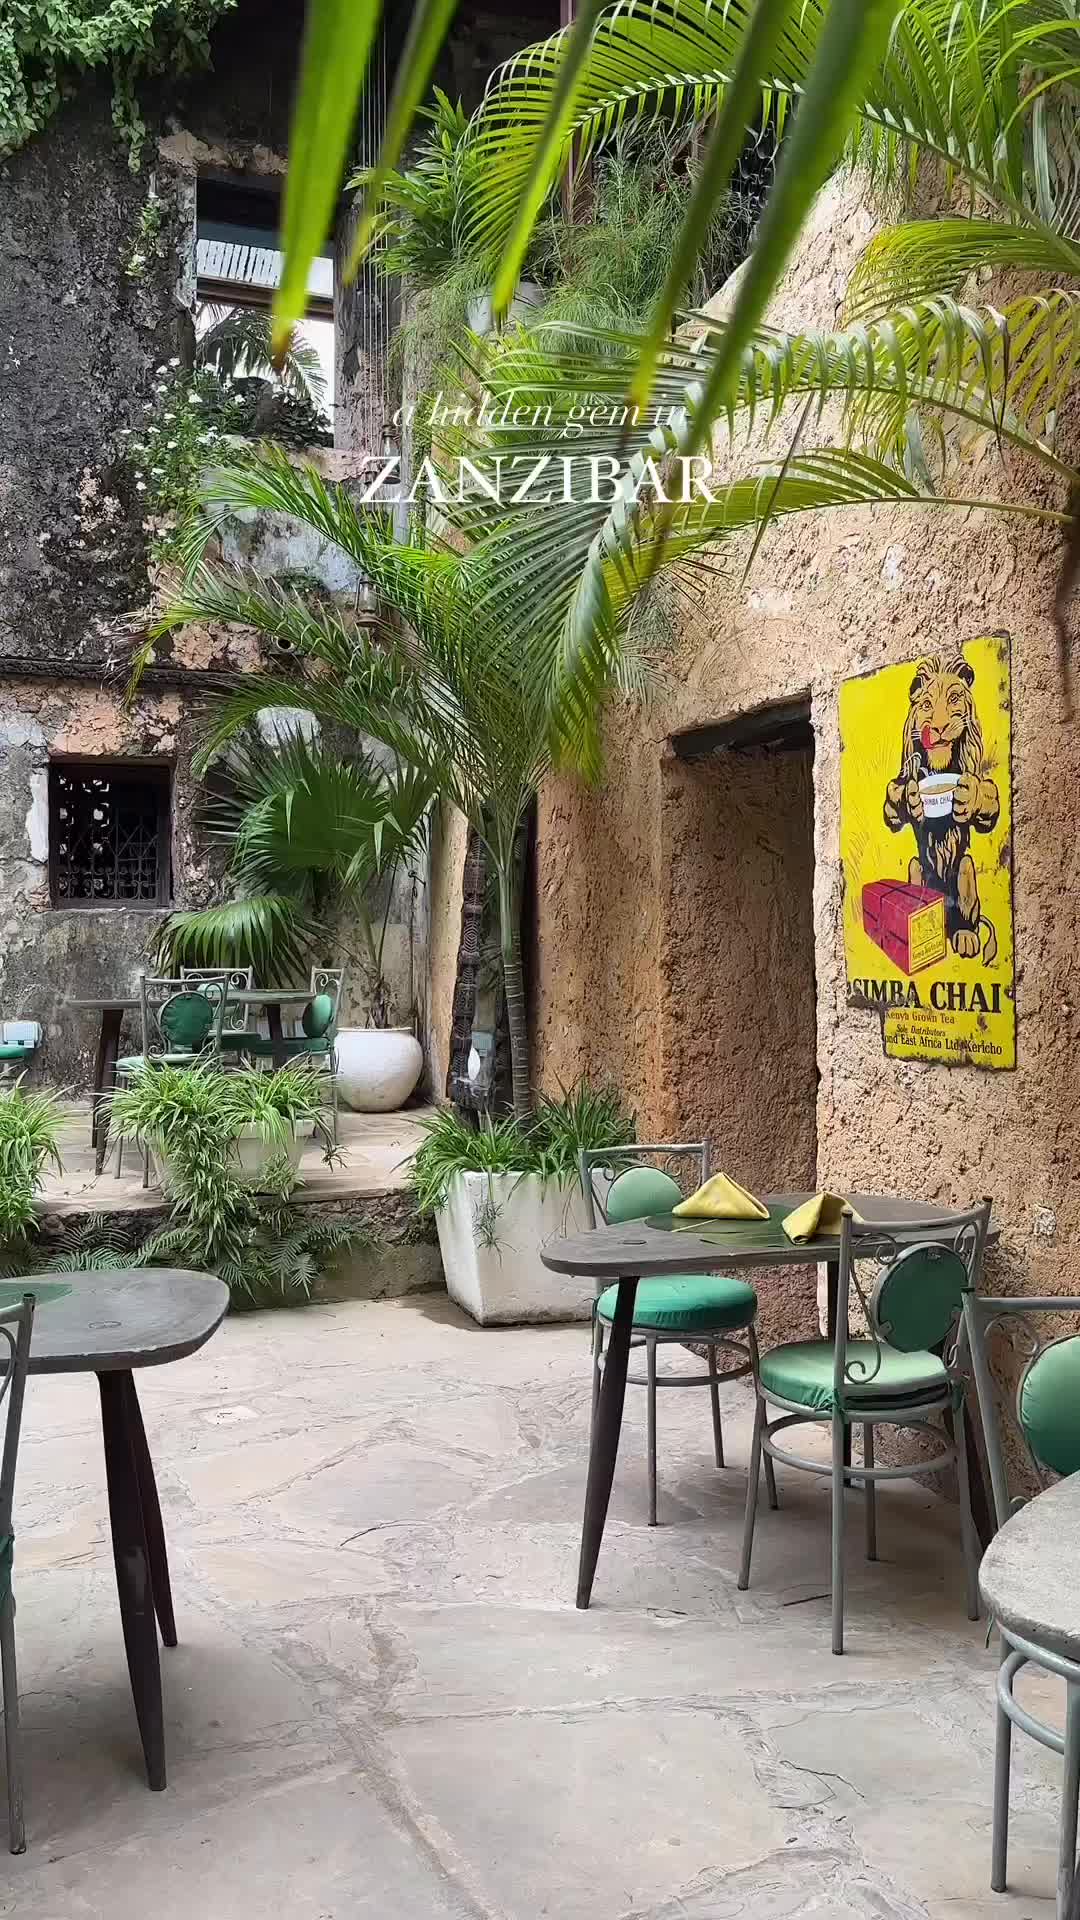 Emerson Spice Secret Garden in Stone Town, Zanzibar